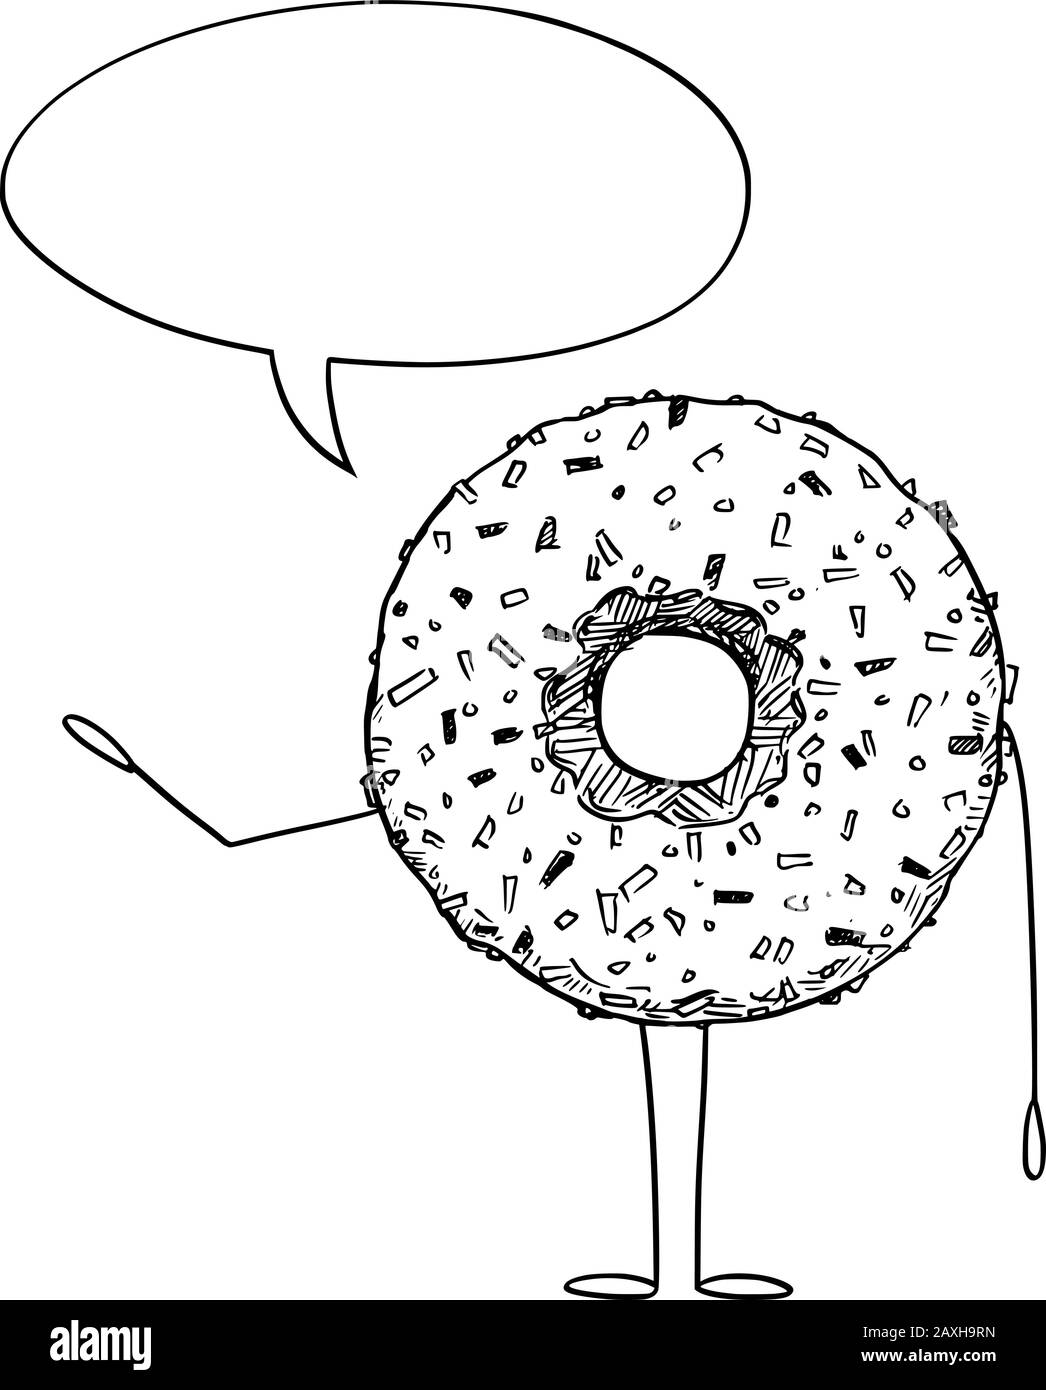 Vektorgrafiken von Cartoon-Donut oder Donut-Charakter mit Sprechblase. Gesunder Lebensstil und Werbung für Junk- oder Backwaren oder Marketingdesign. Stock Vektor